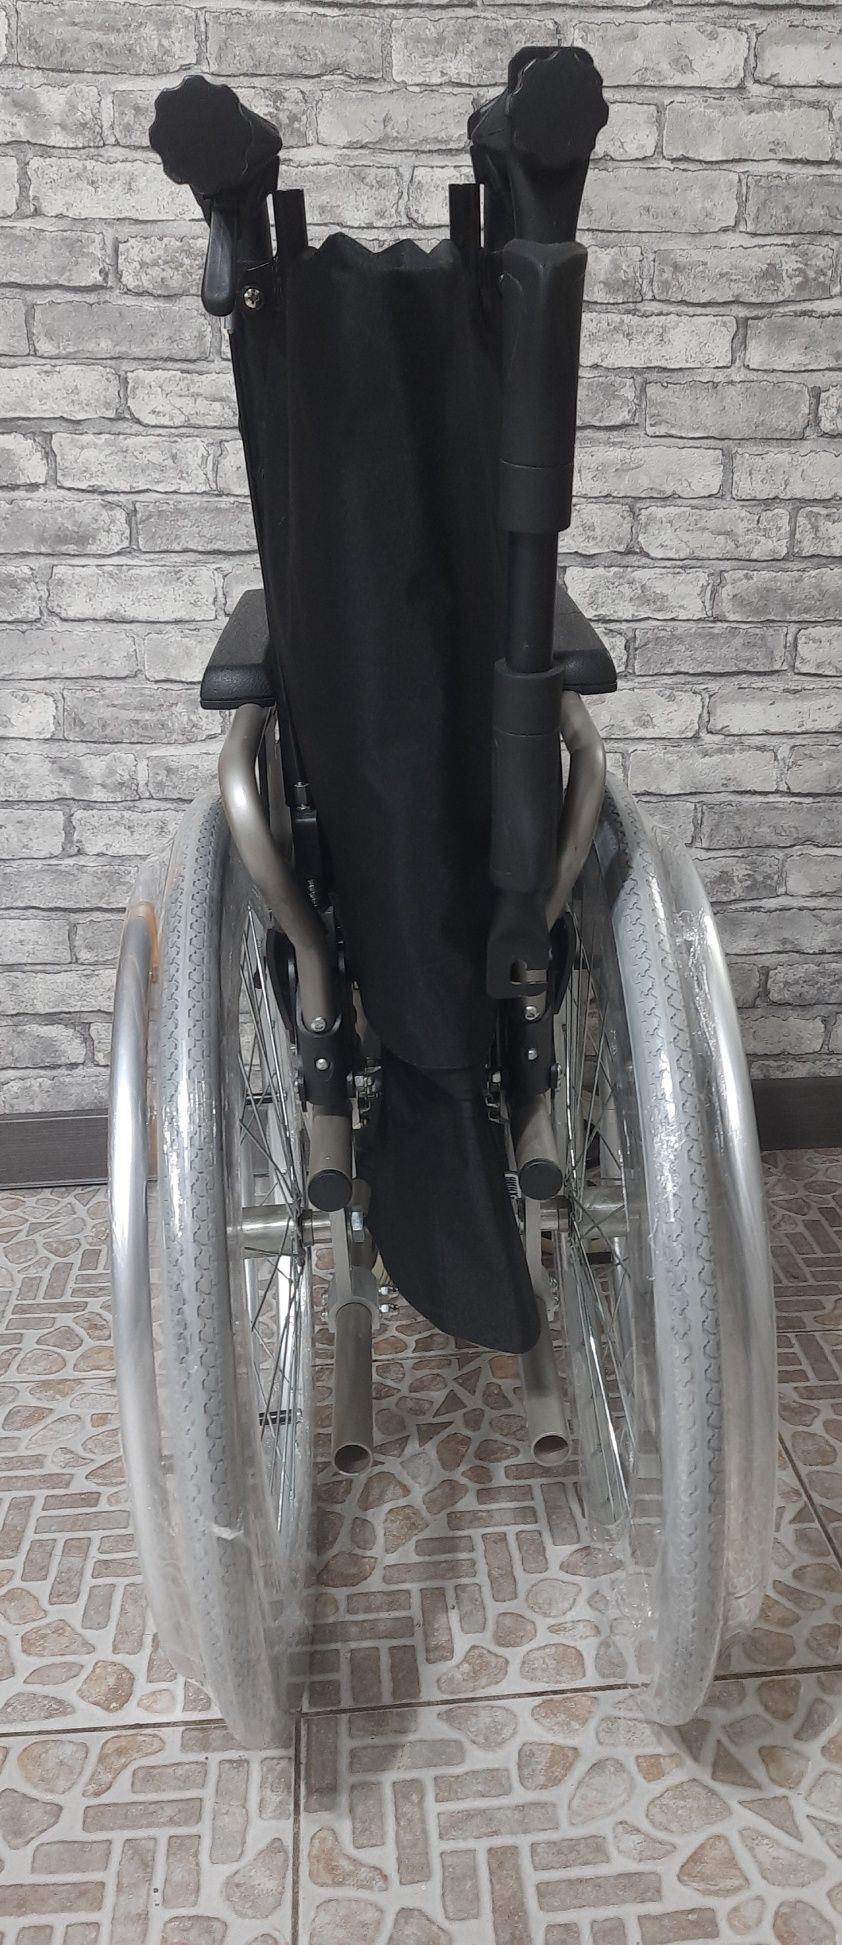 Инвалидная коляска + откидная спинка + подголовник отличного качества.